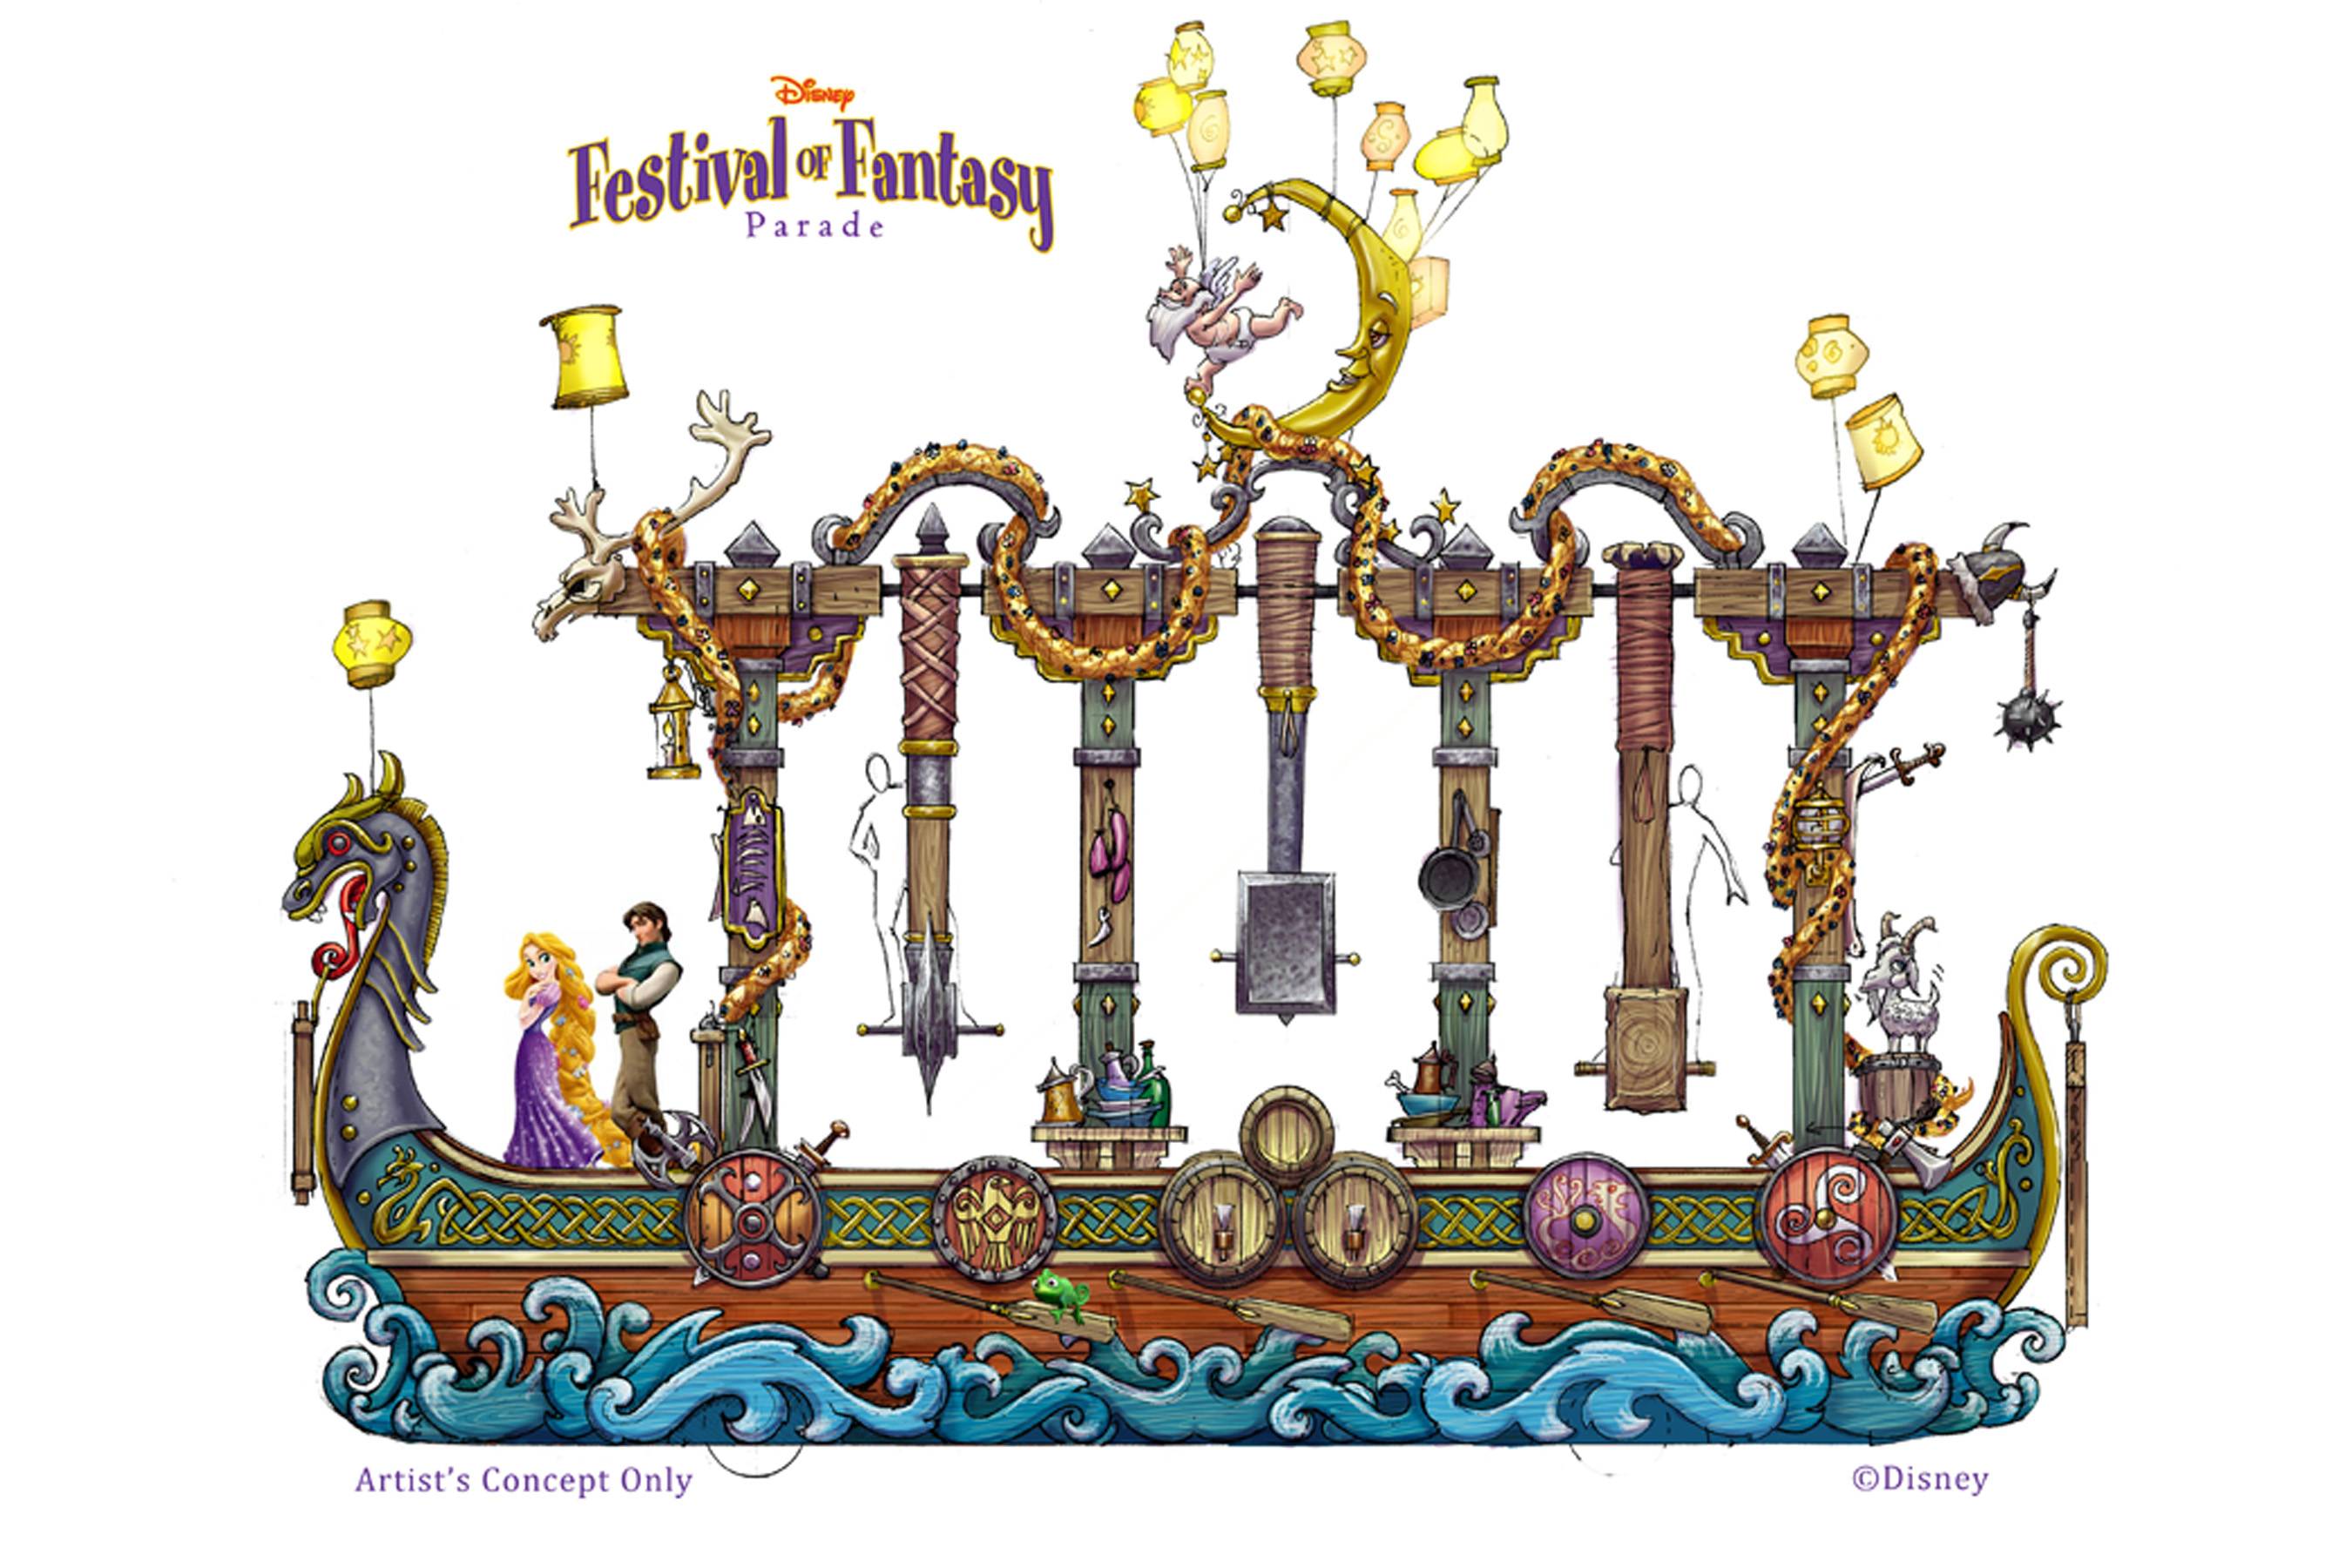 Festival of Fantasy Parade concept art